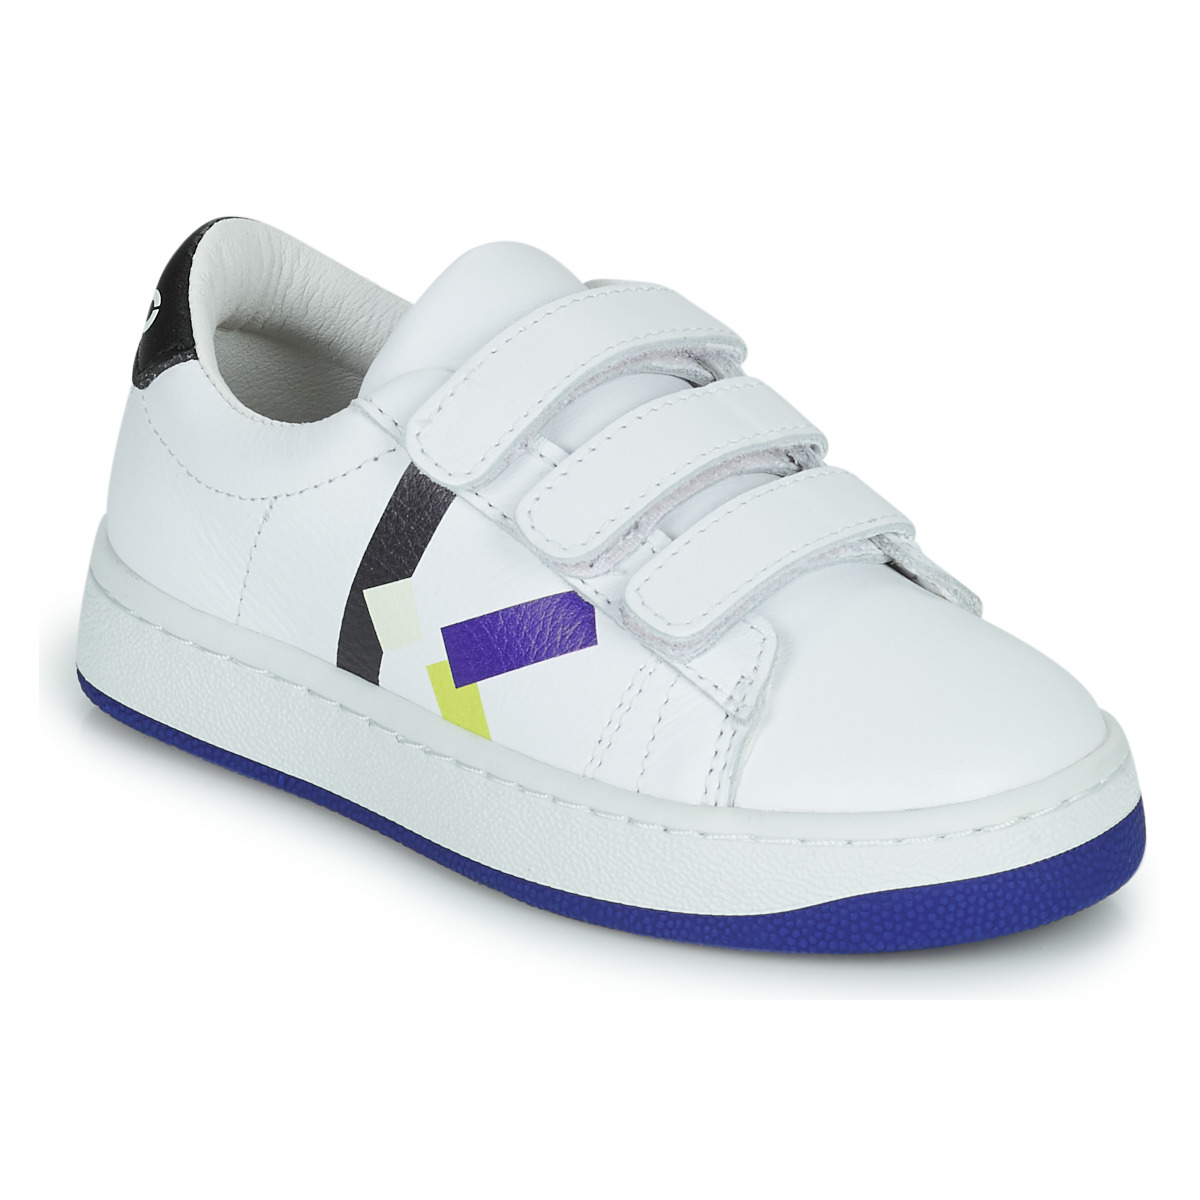 鞋子 男孩 球鞋基本款 Kenzo K29079 白色